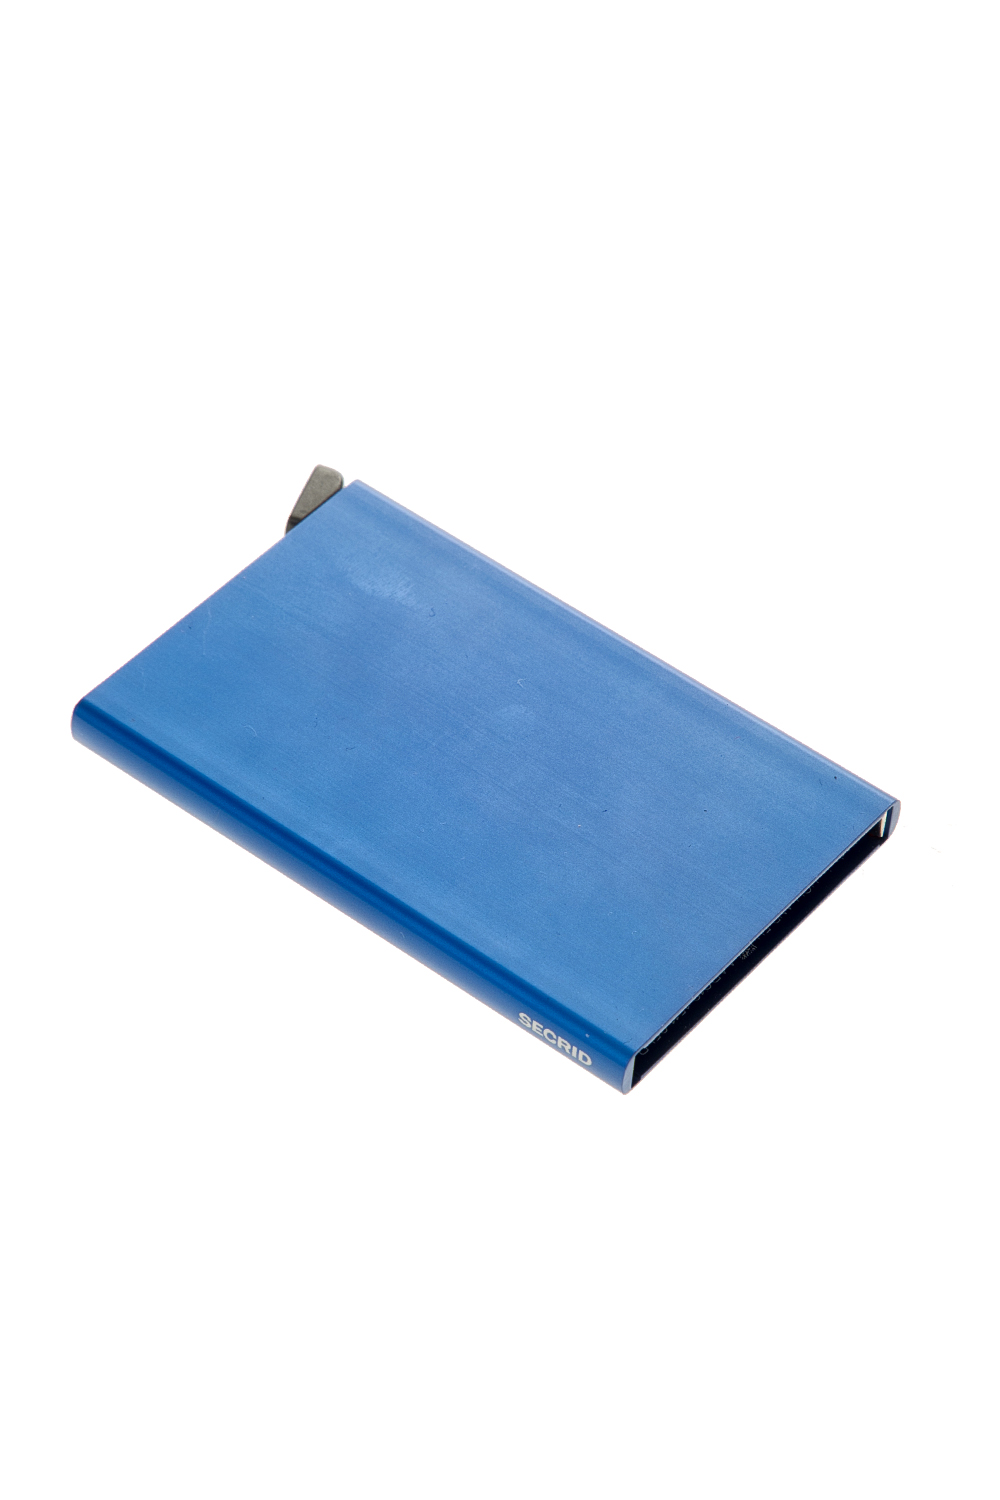 Ανδρικά/Αξεσουάρ/Θήκες SECRID - Θήκη καρτών SECRID Cardprotector μπλε